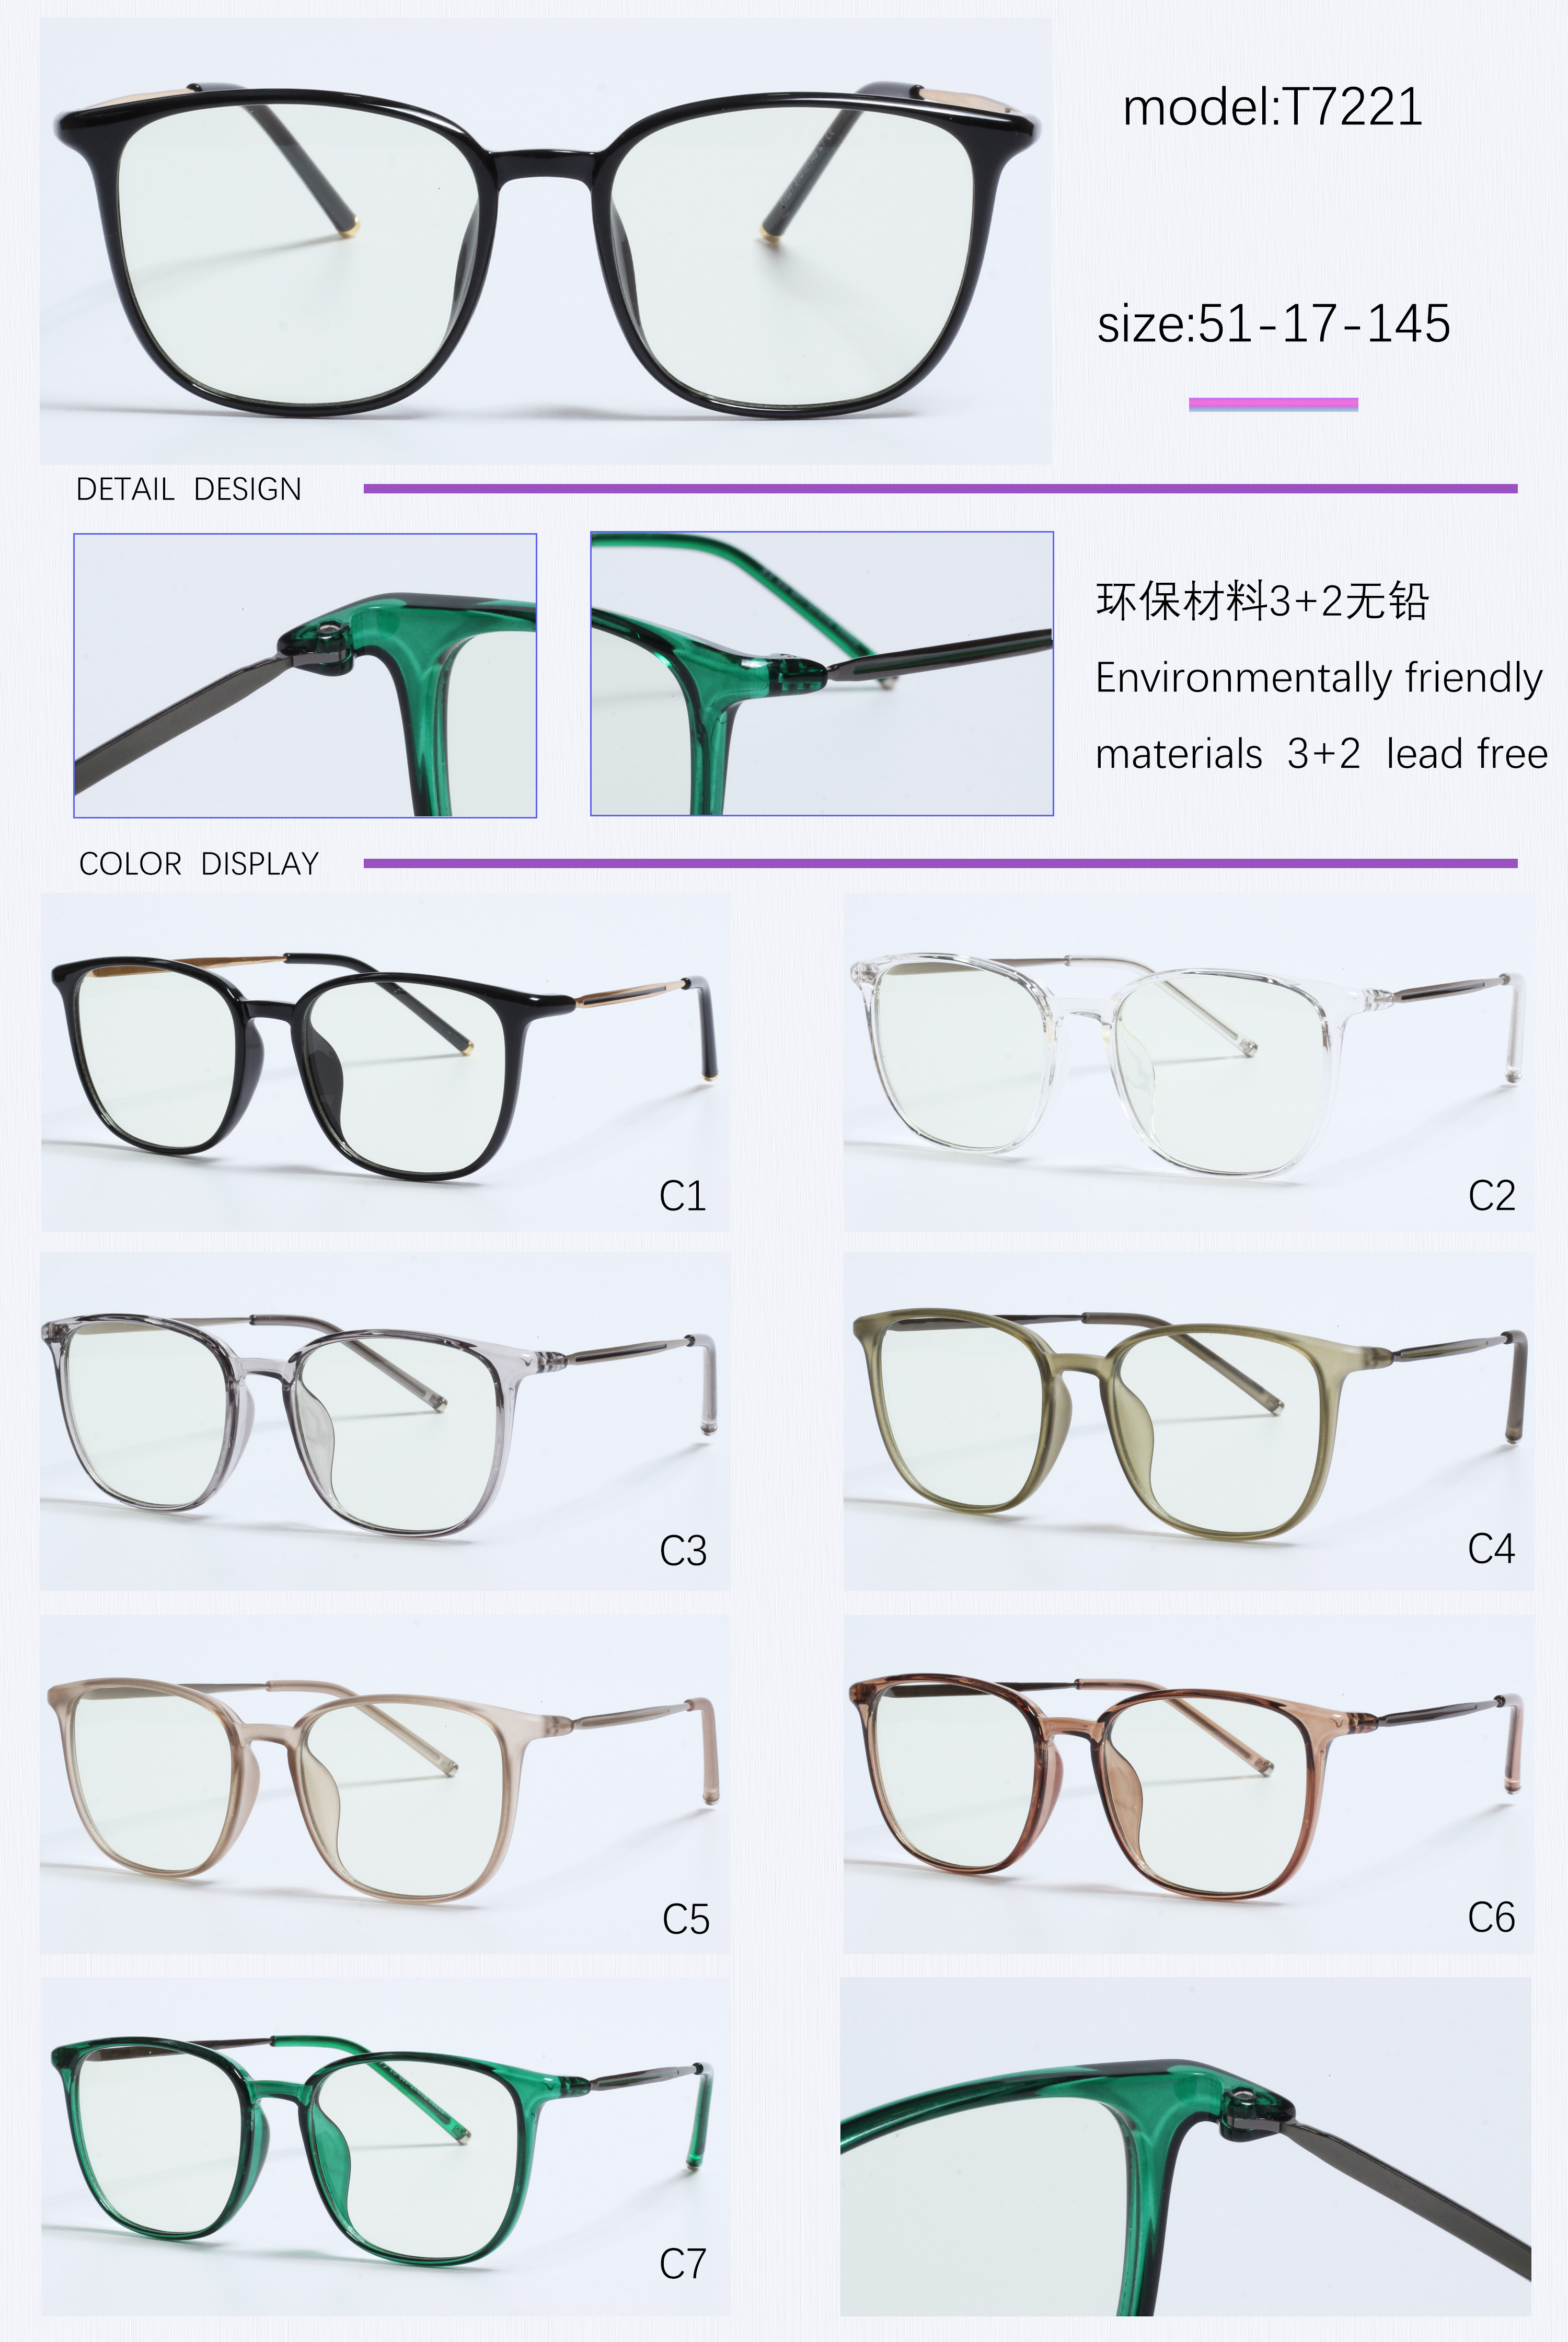 New retro lunette anti lumiere designer prescription glasses (11)